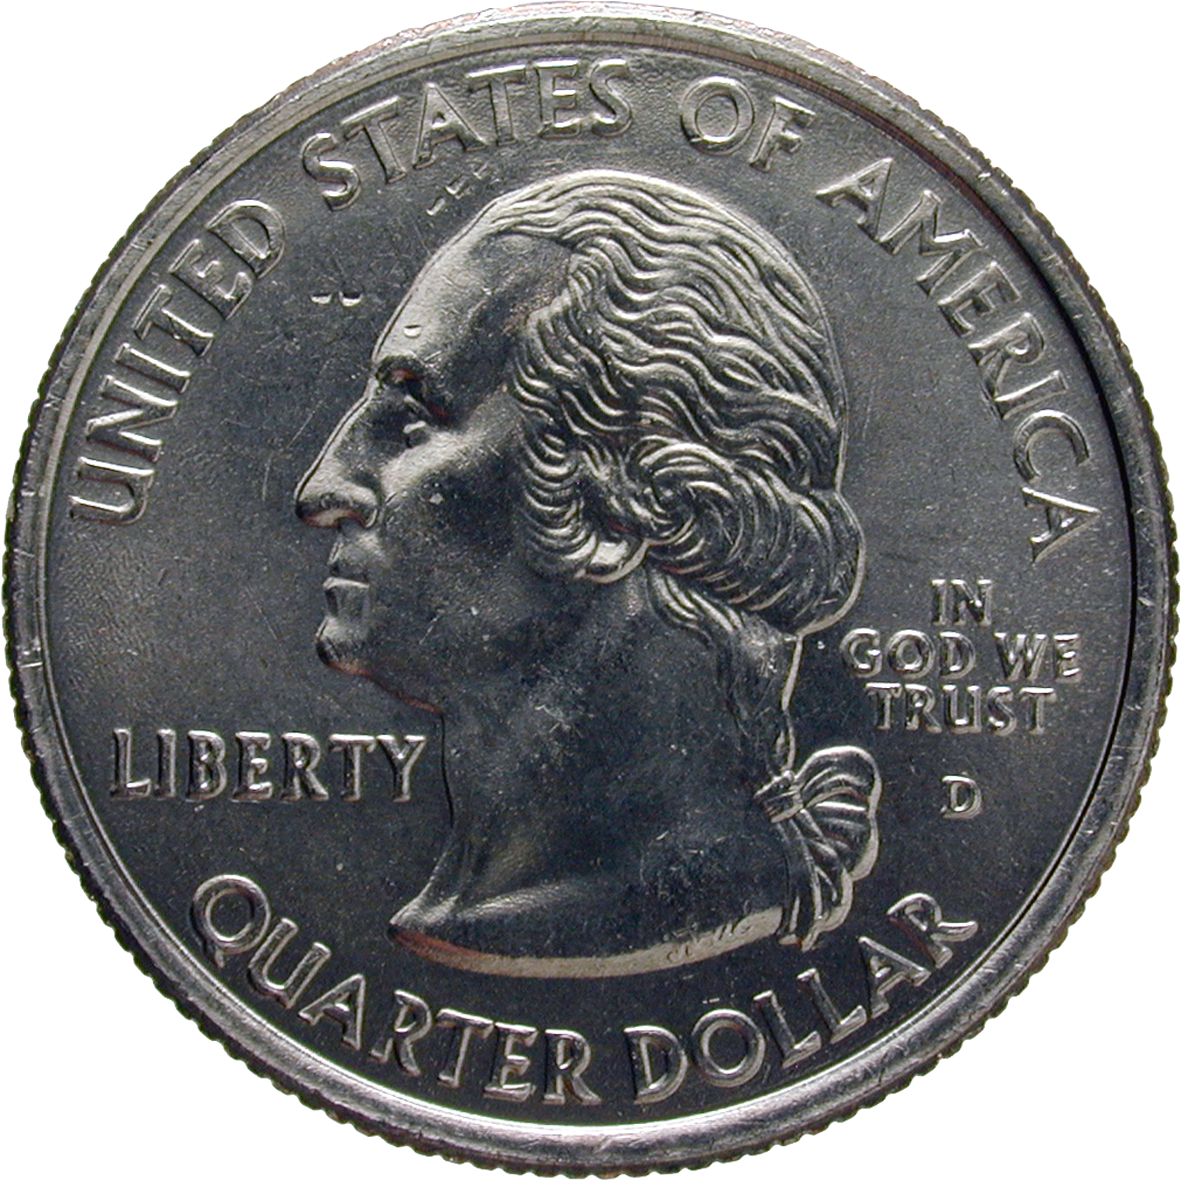 Vereinigte Staaten von Amerika, Quarter Dollar 2008 (obverse)